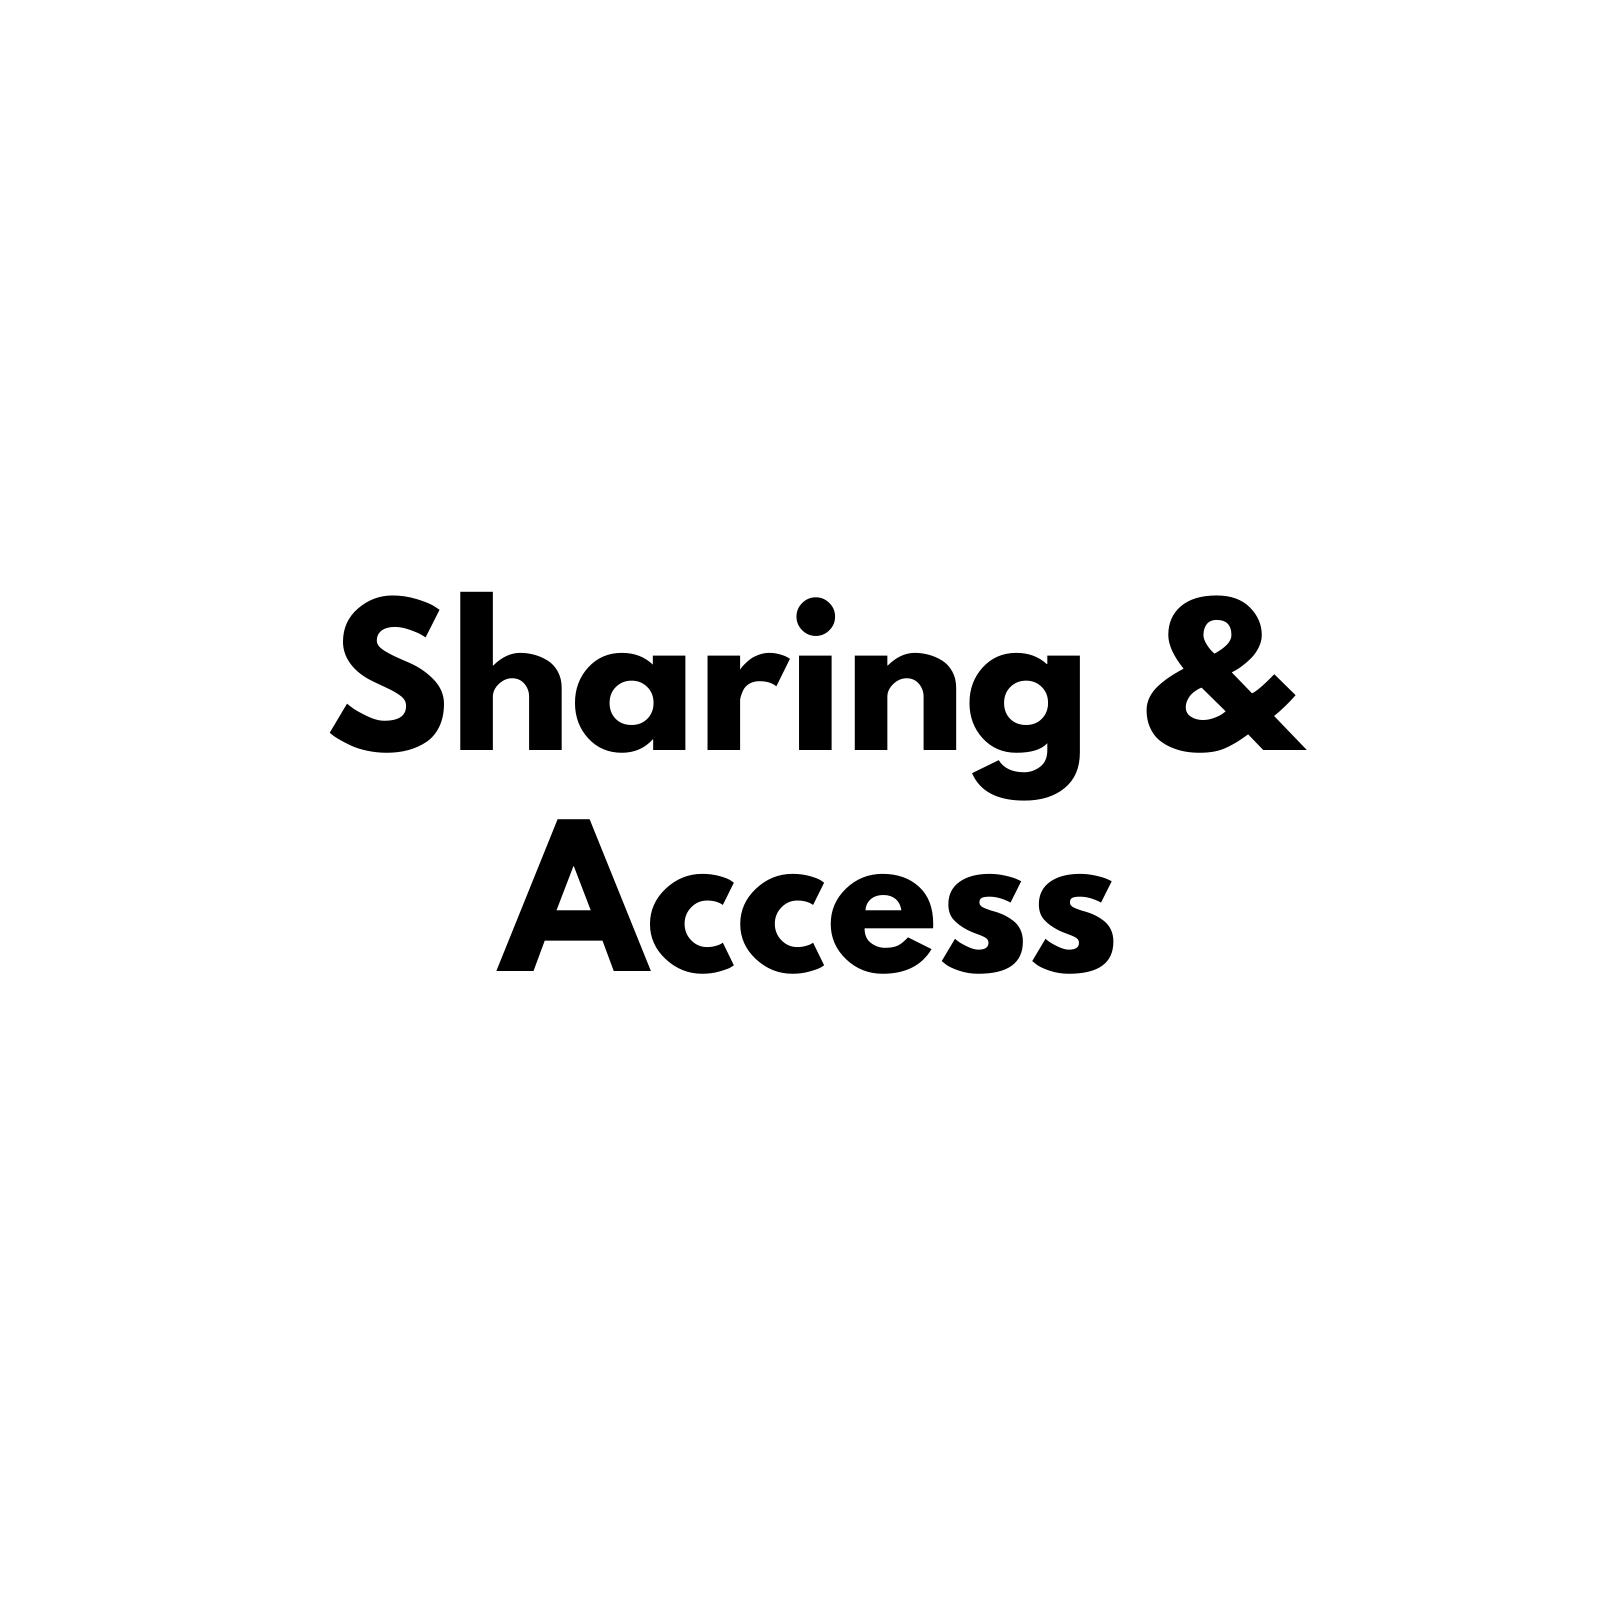 Sharing & Access